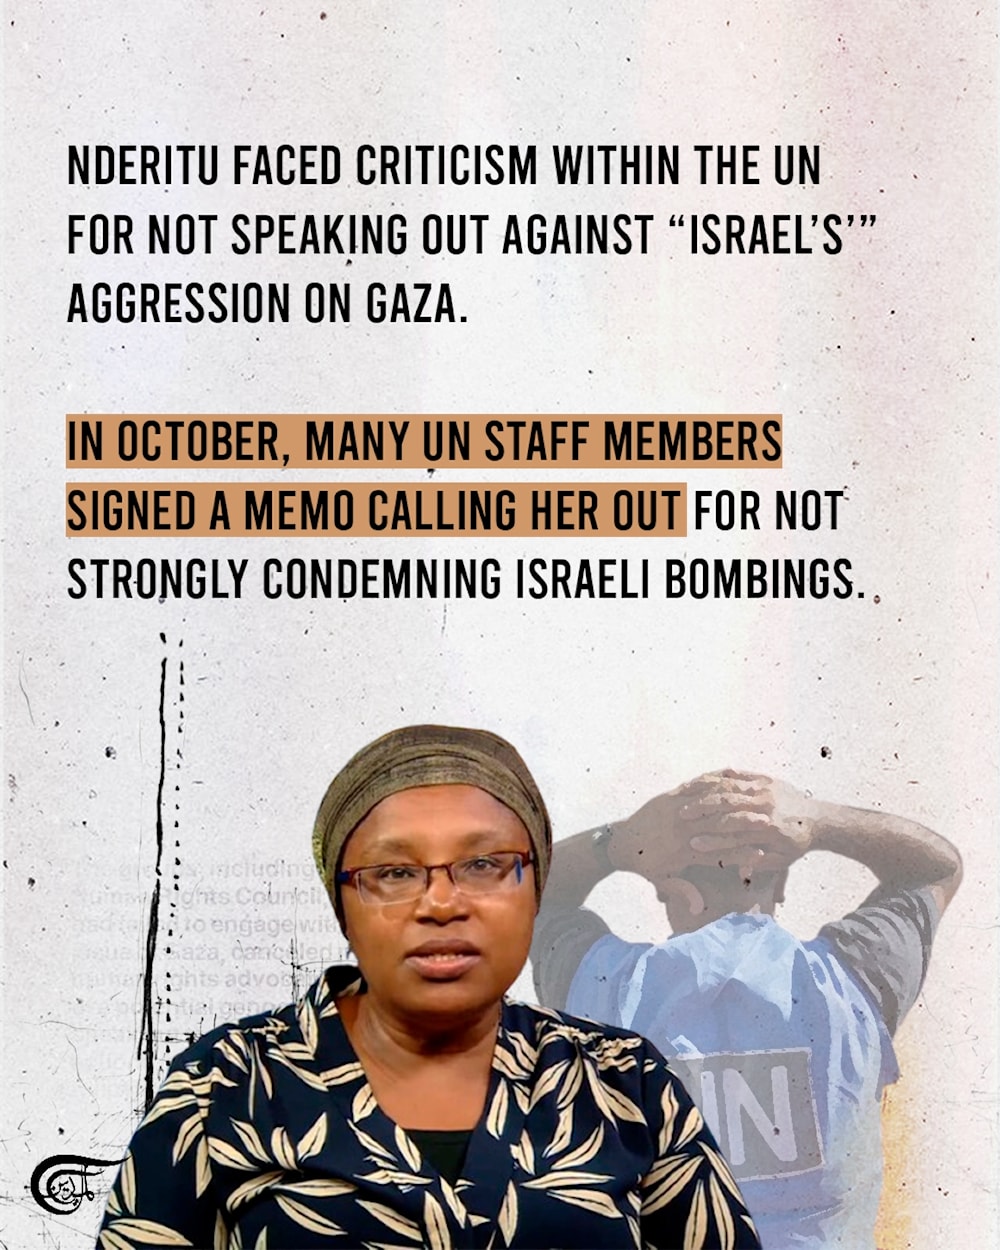 Top UN official accused of ignoring Gaza genocide